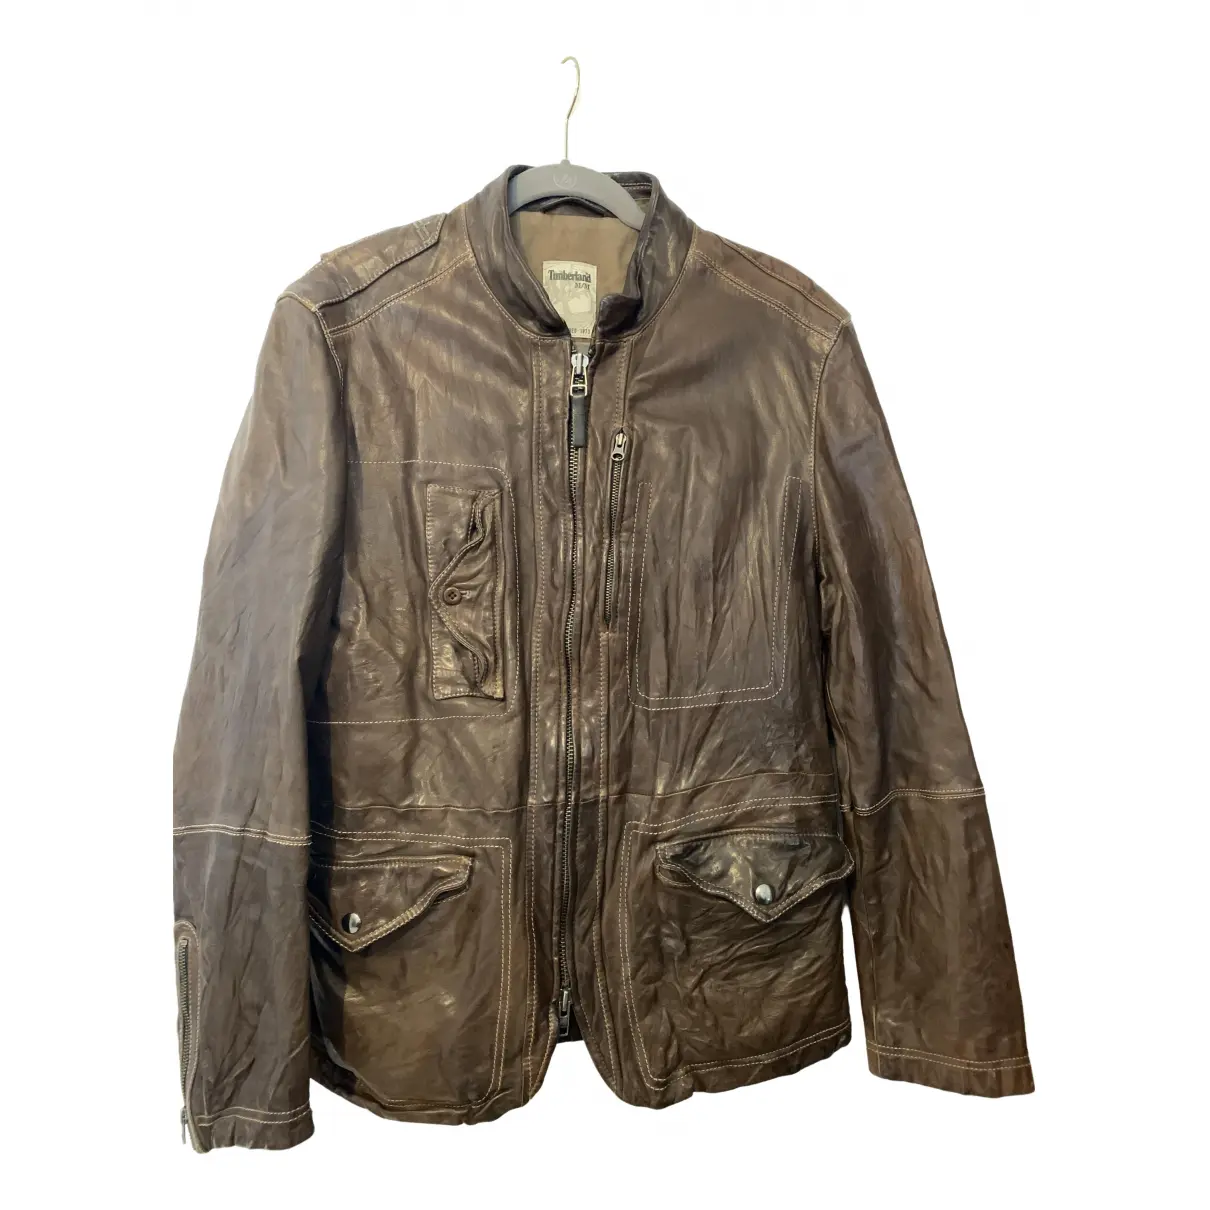 Leather jacket Timberland - Vintage